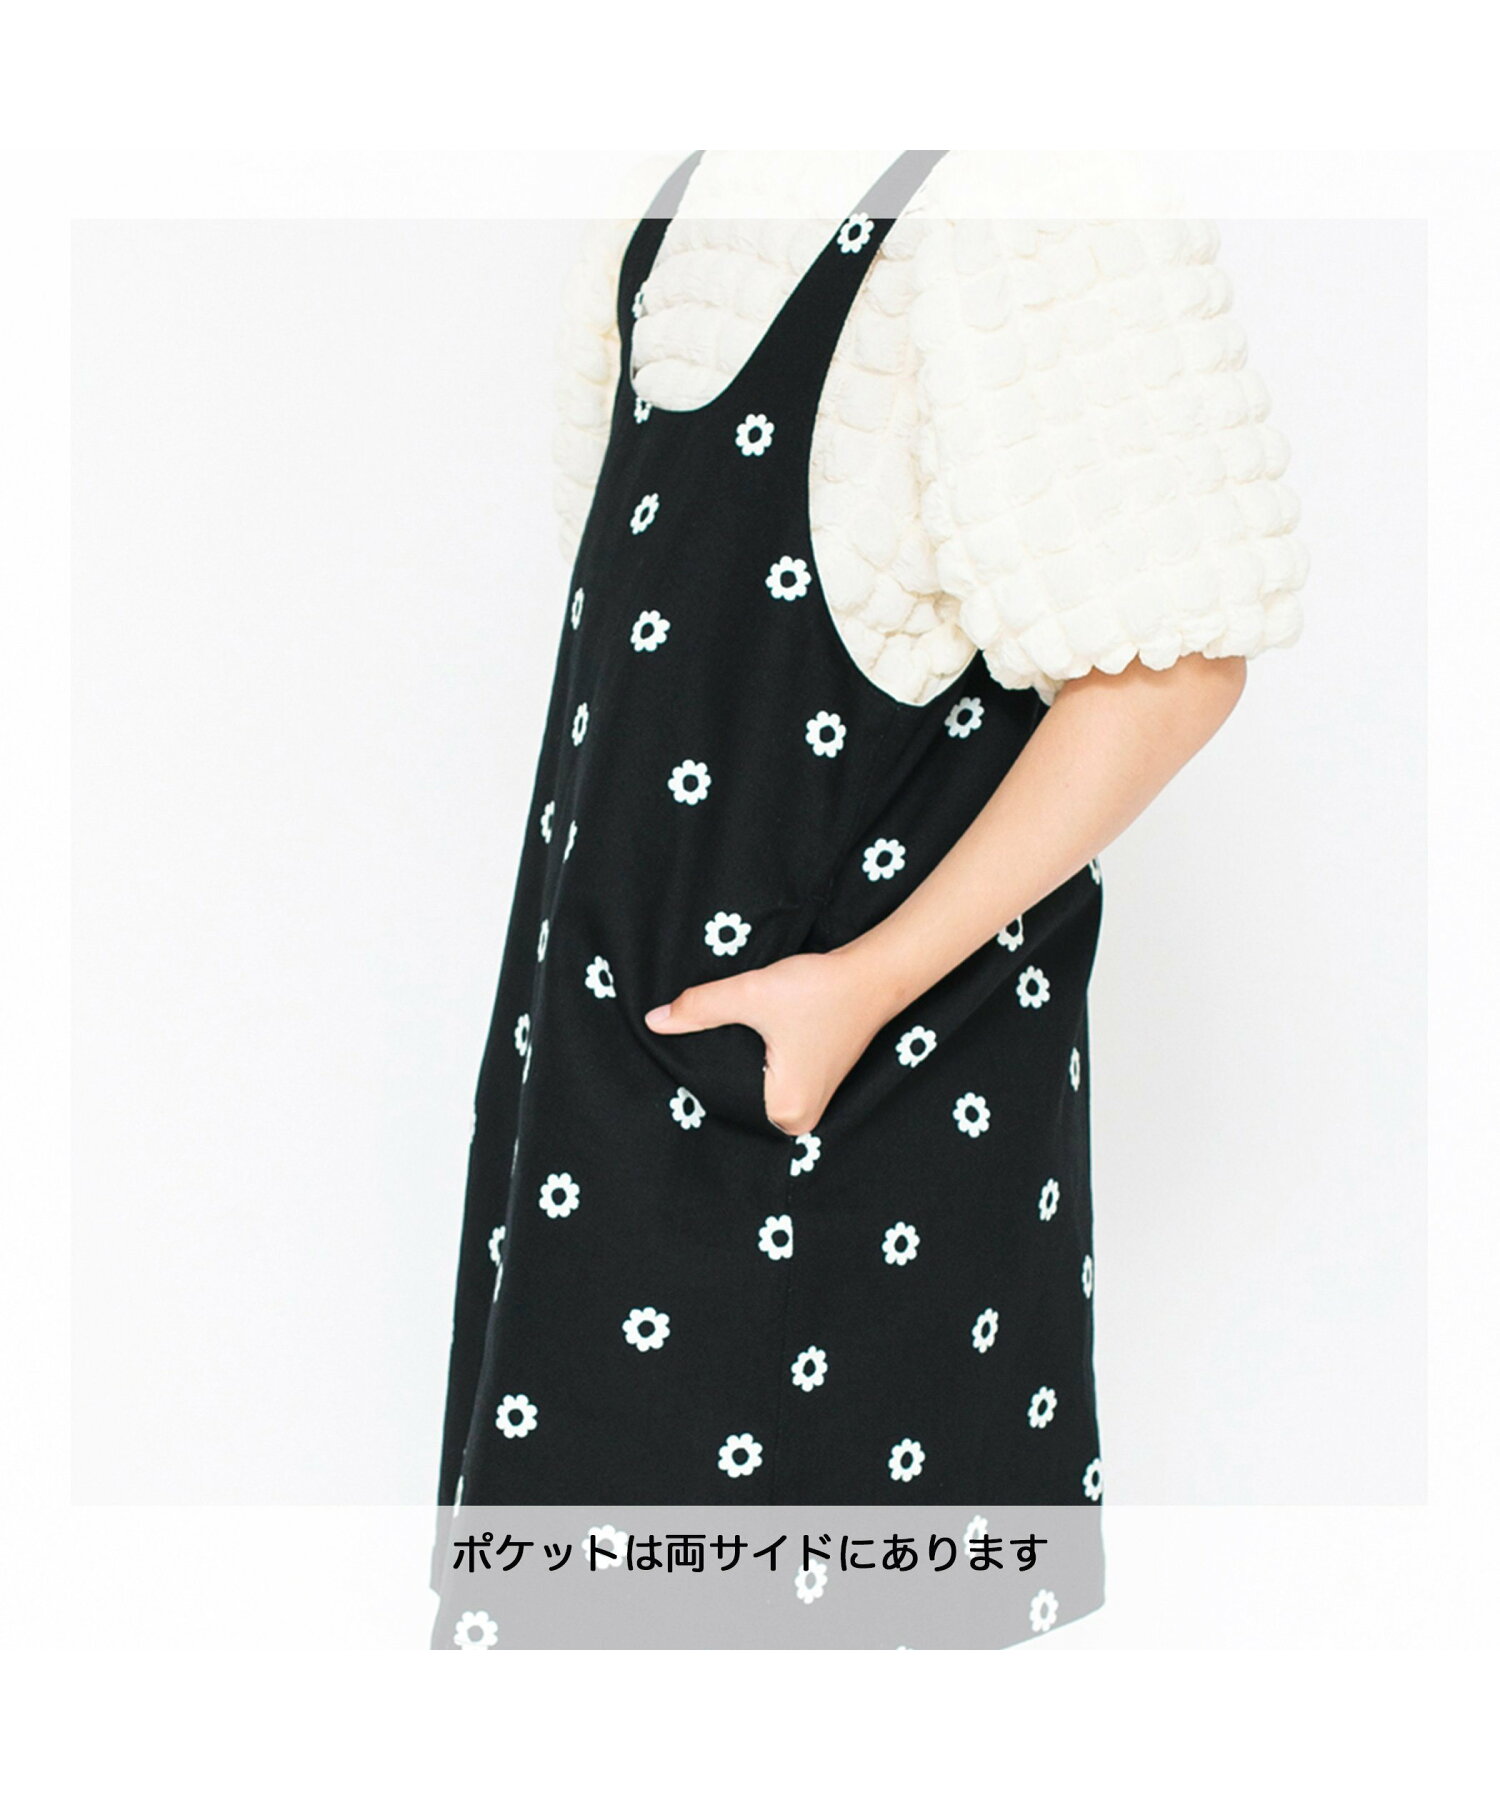 【プチプラ】ツイル総柄プリントジャンパースカート